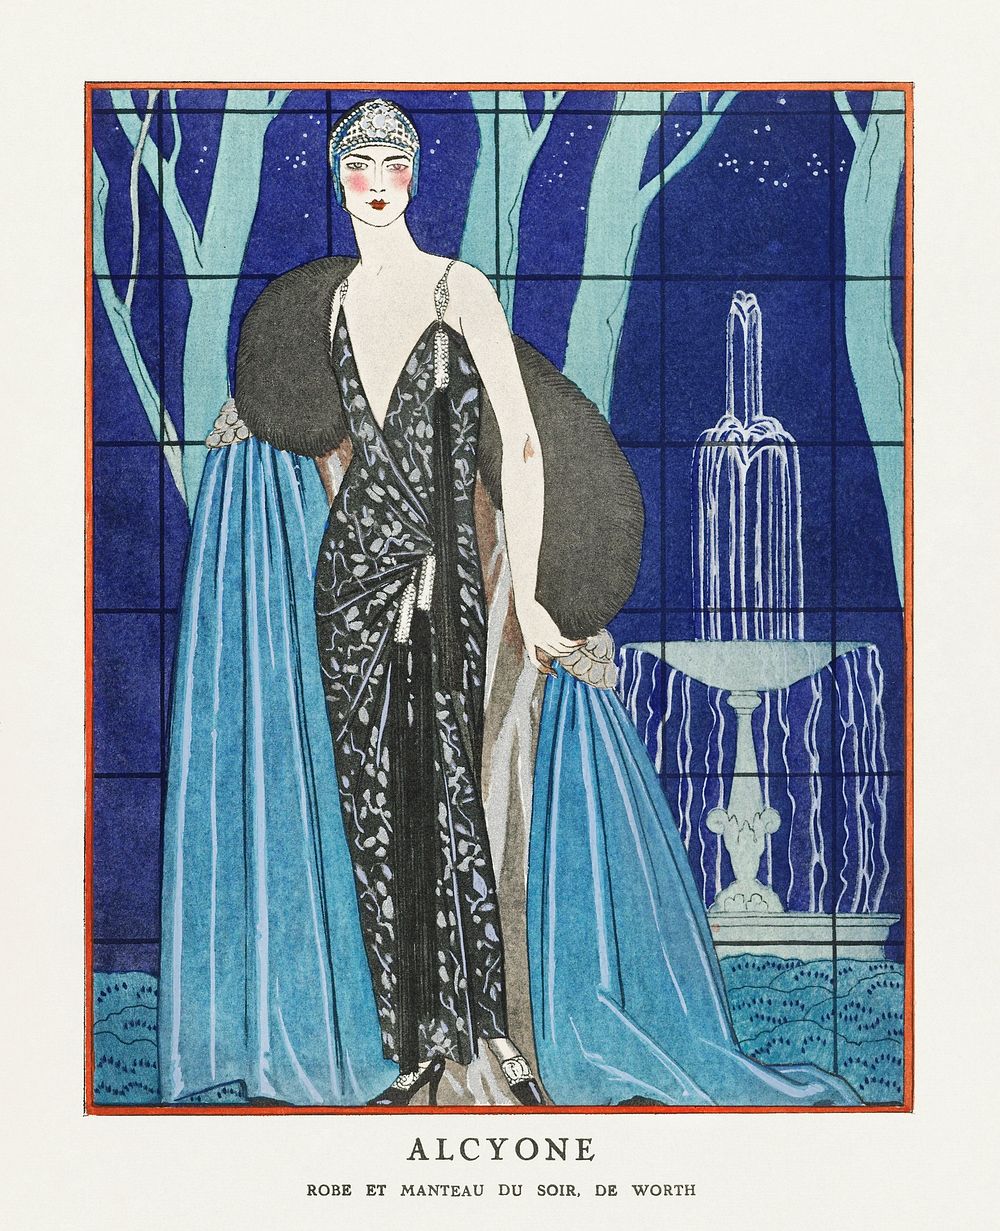 Alcyone / Robe et manteau du soir, de Worth (1923) fashion illustration in high resolution by George Barbier. Original from…